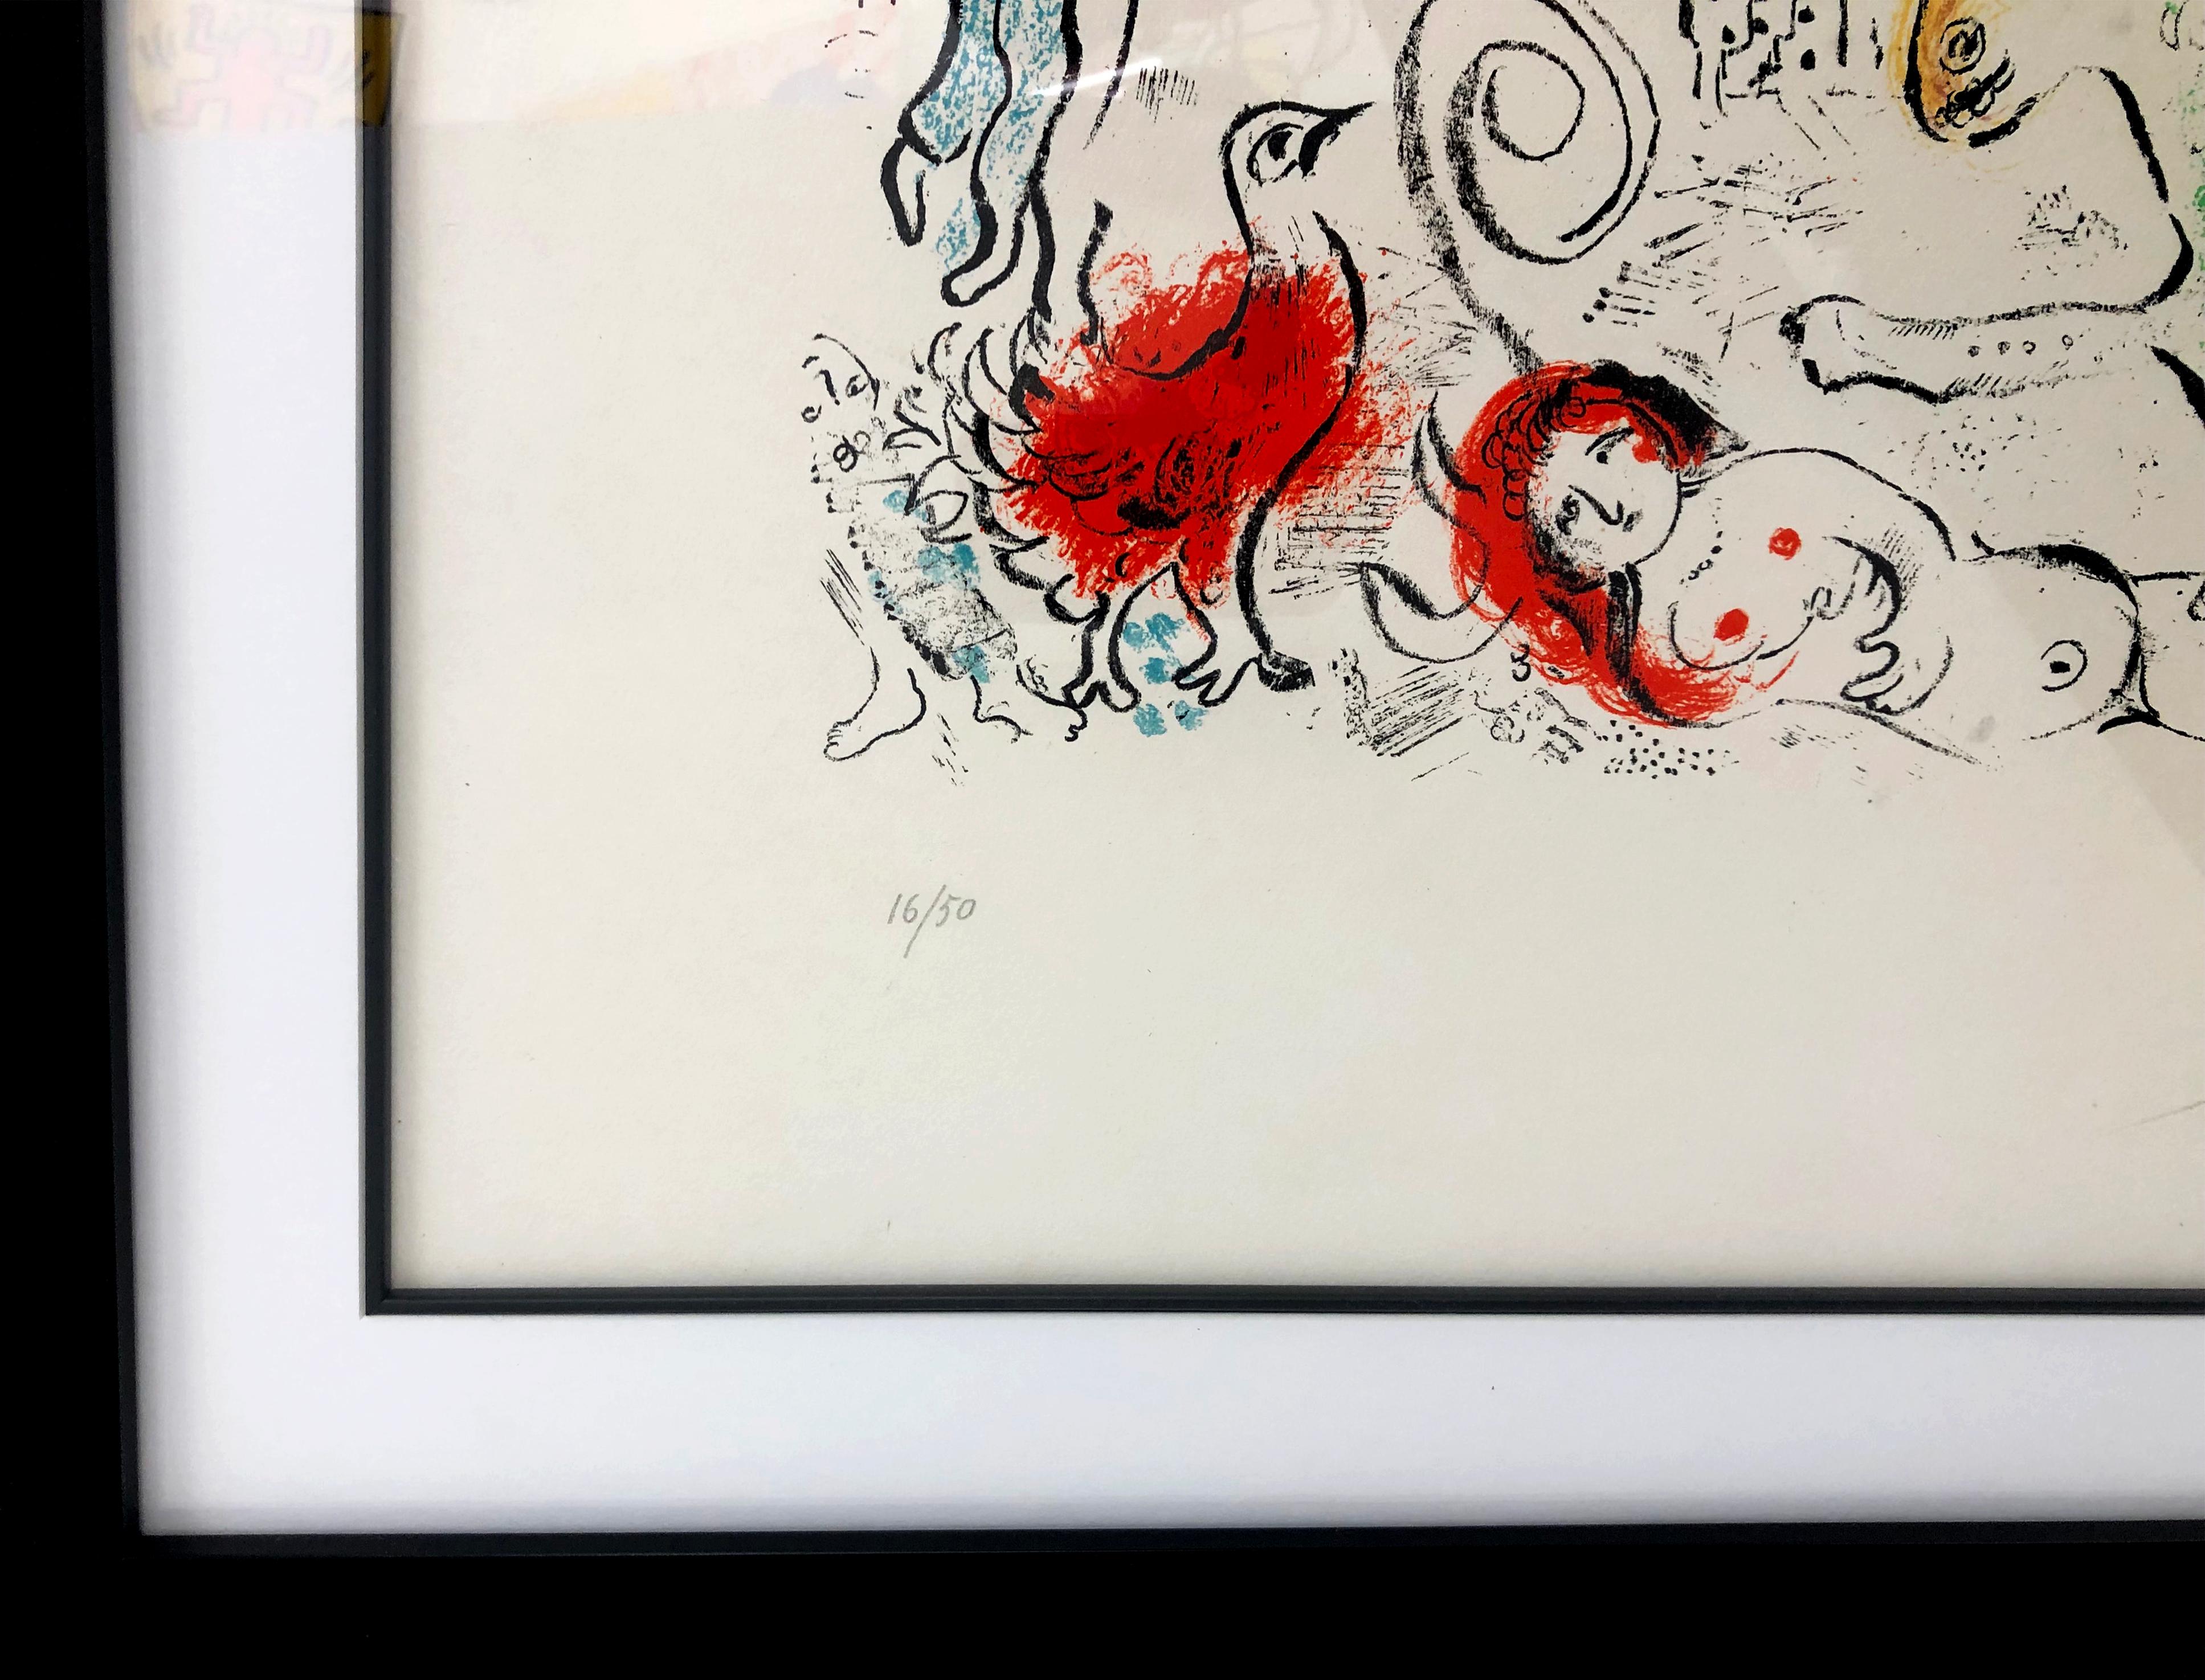 UNBEZEICHNET AUS DEM XXE SIECLE (MOURLOT 699) (Surrealismus), Print, von Marc Chagall